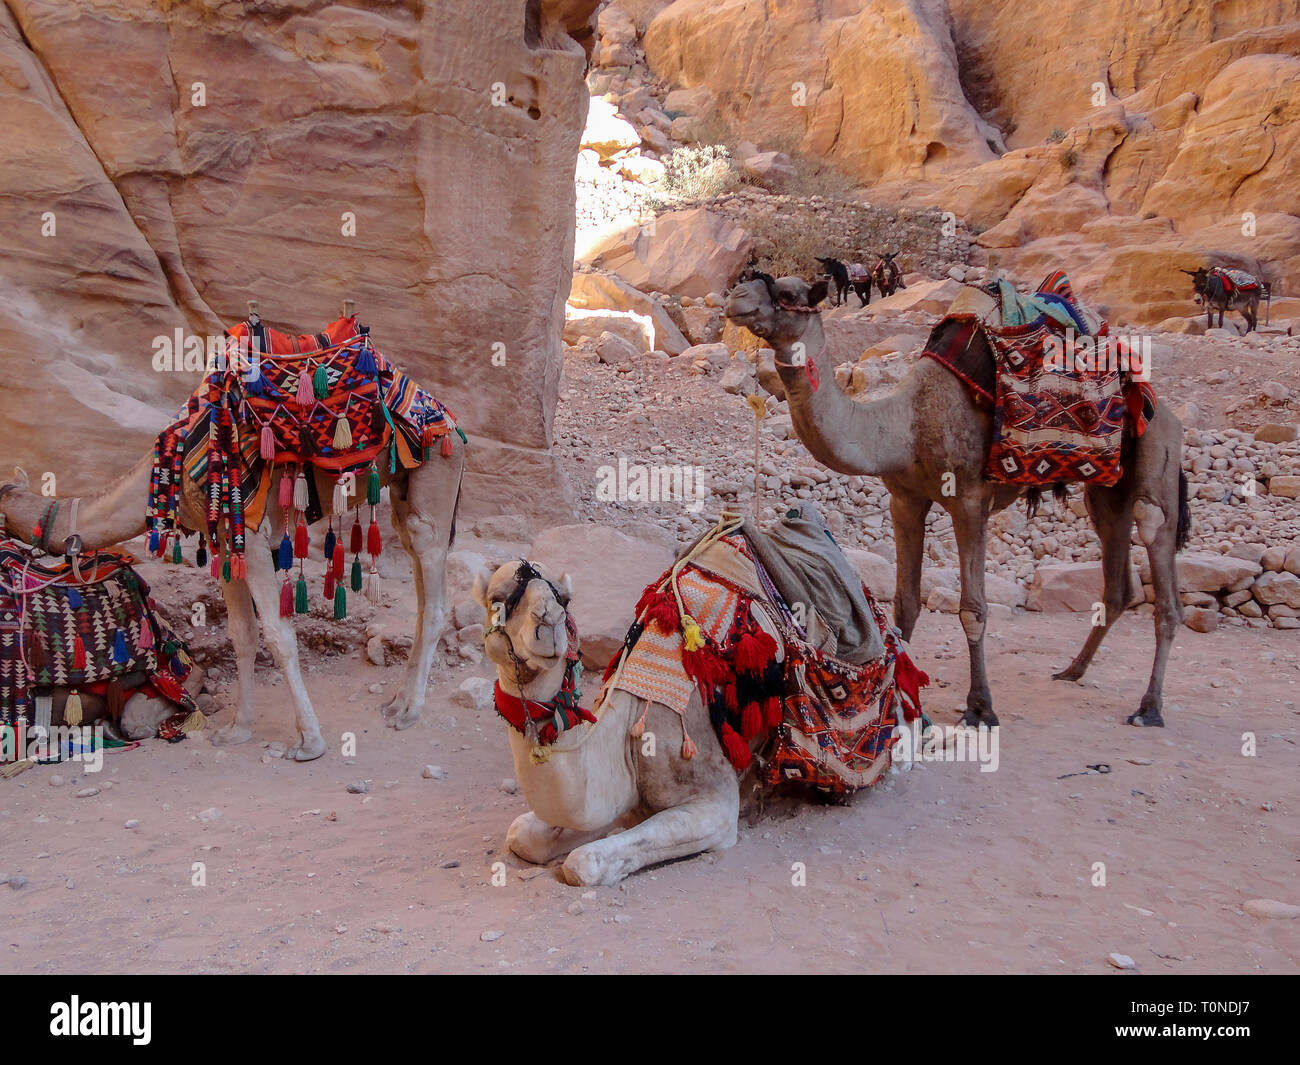 Camels at Petra. Stock Photo